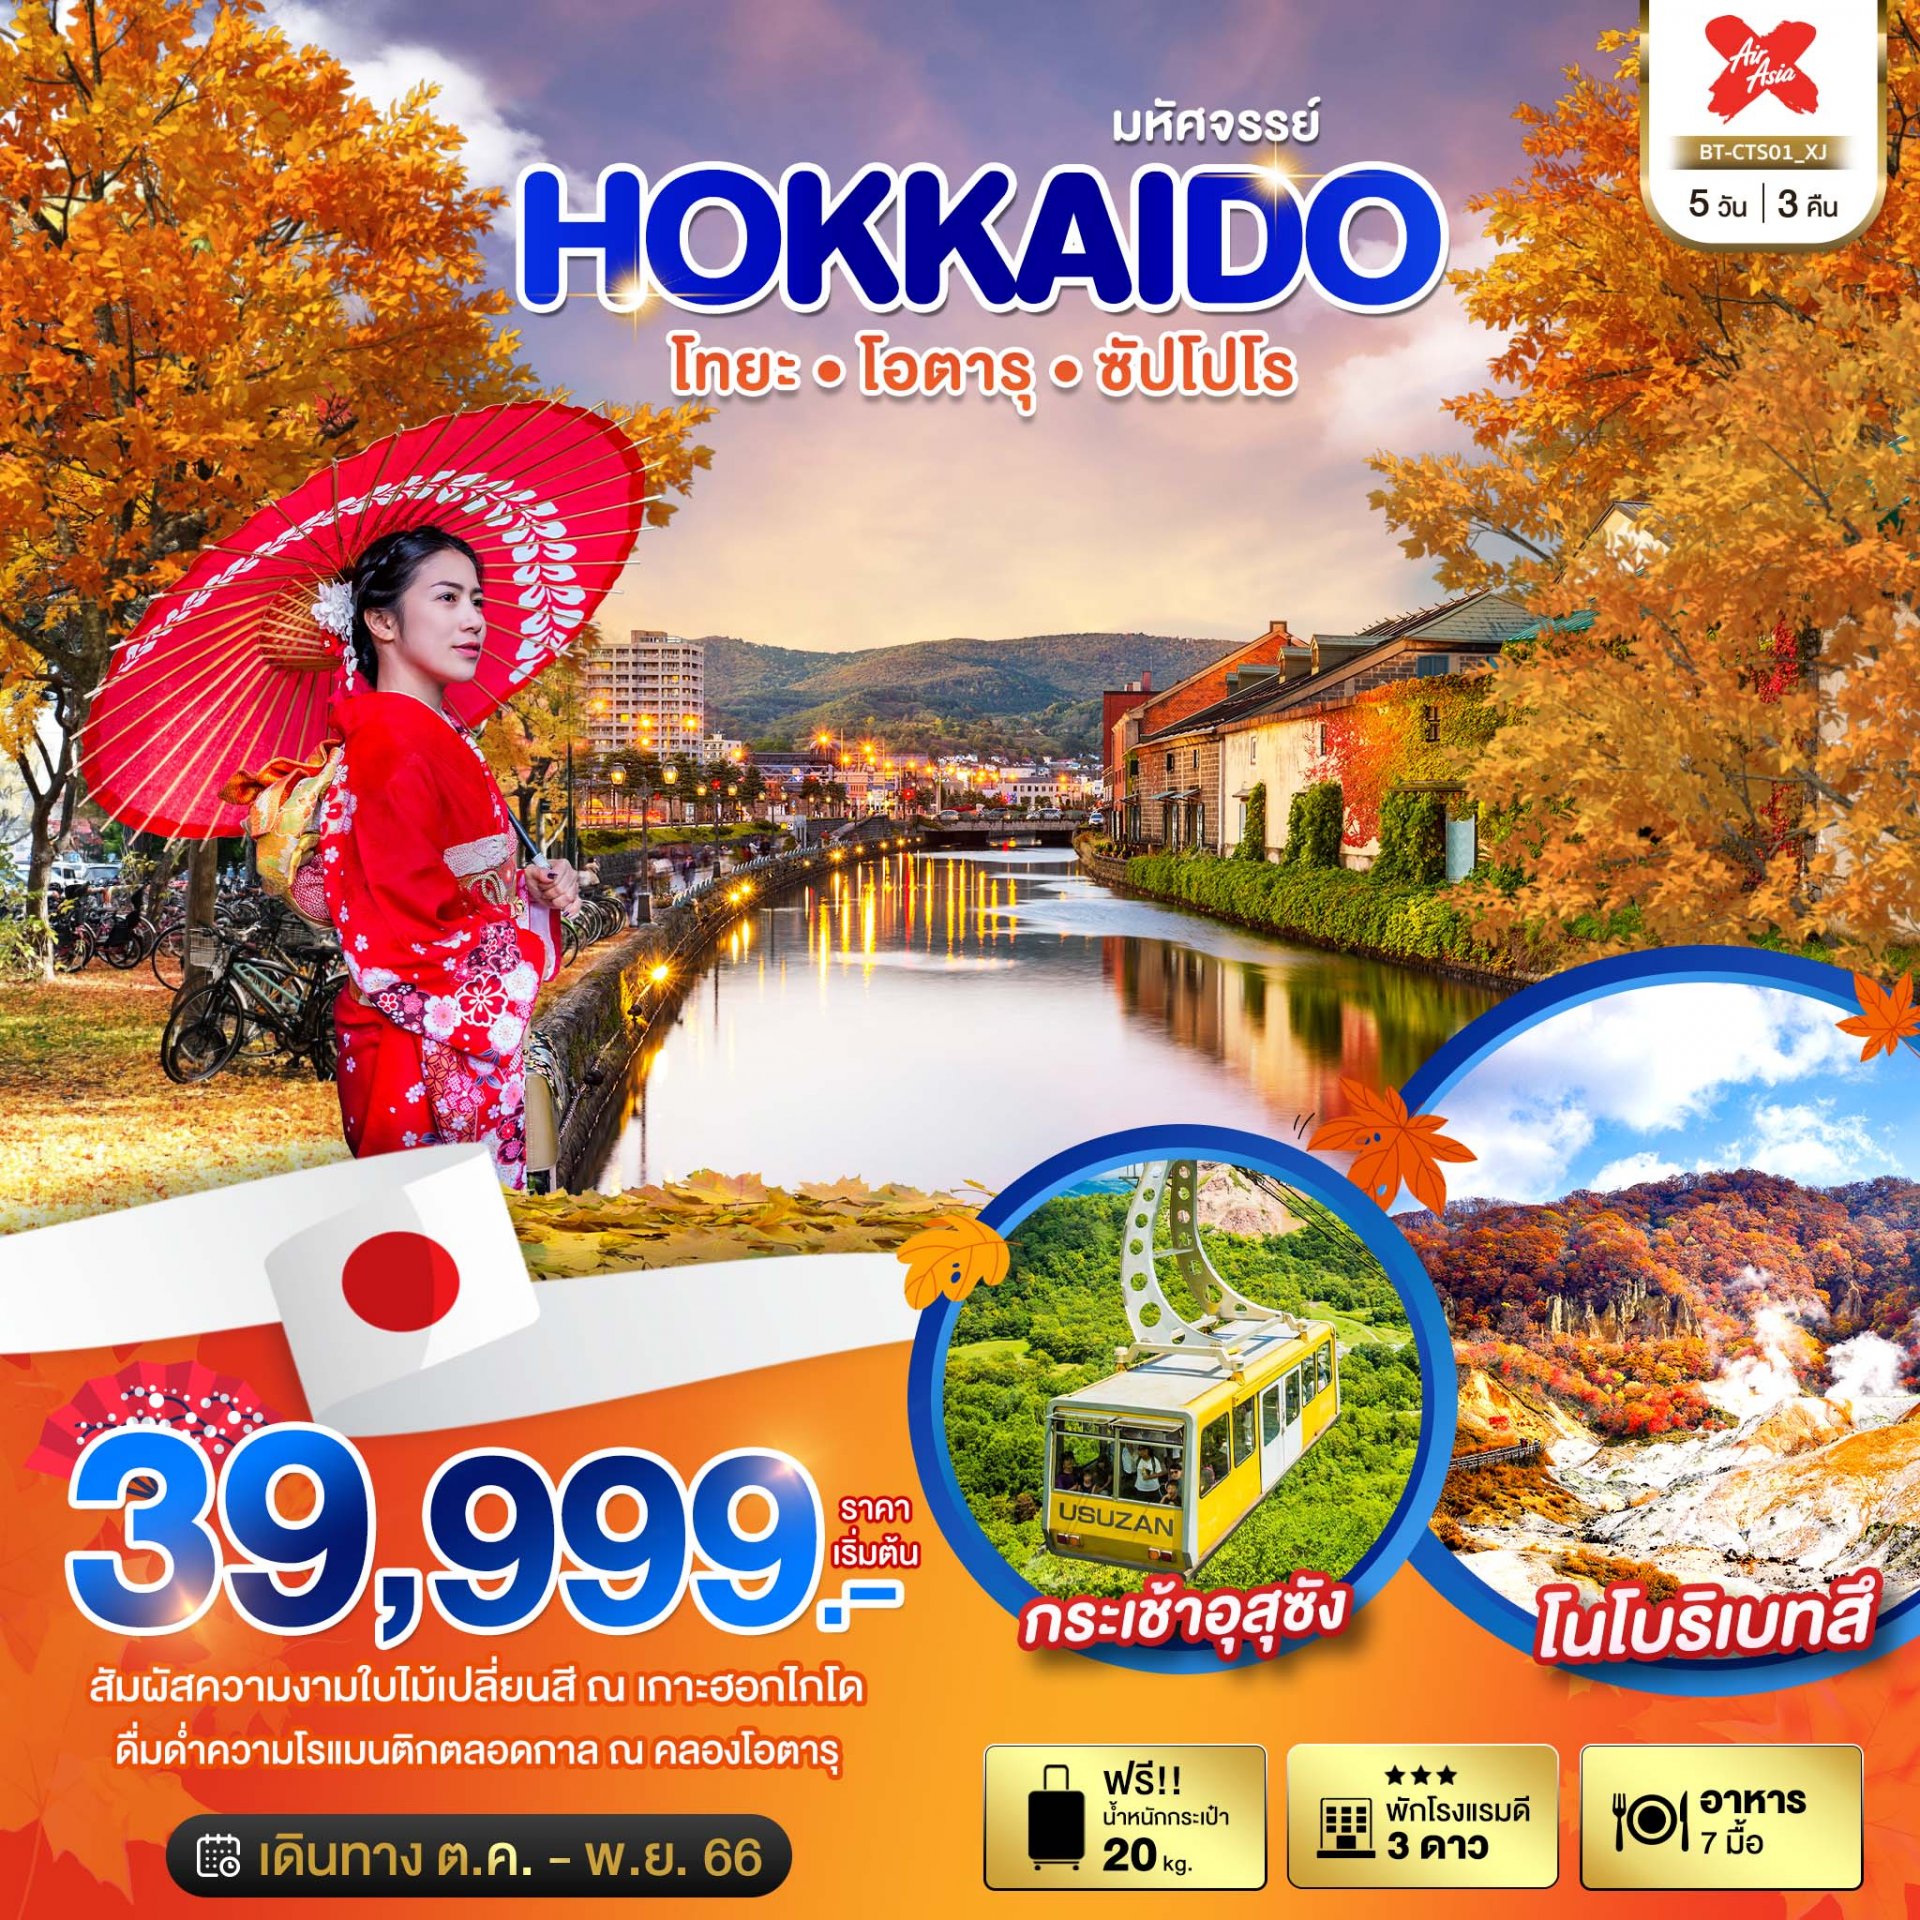 ทัวร์ญี่ปุ่น : มหัศจรรย์...HOKKAIDO โทยะ โอตารุ ซัปโปโร 5 วัน 3 คืน